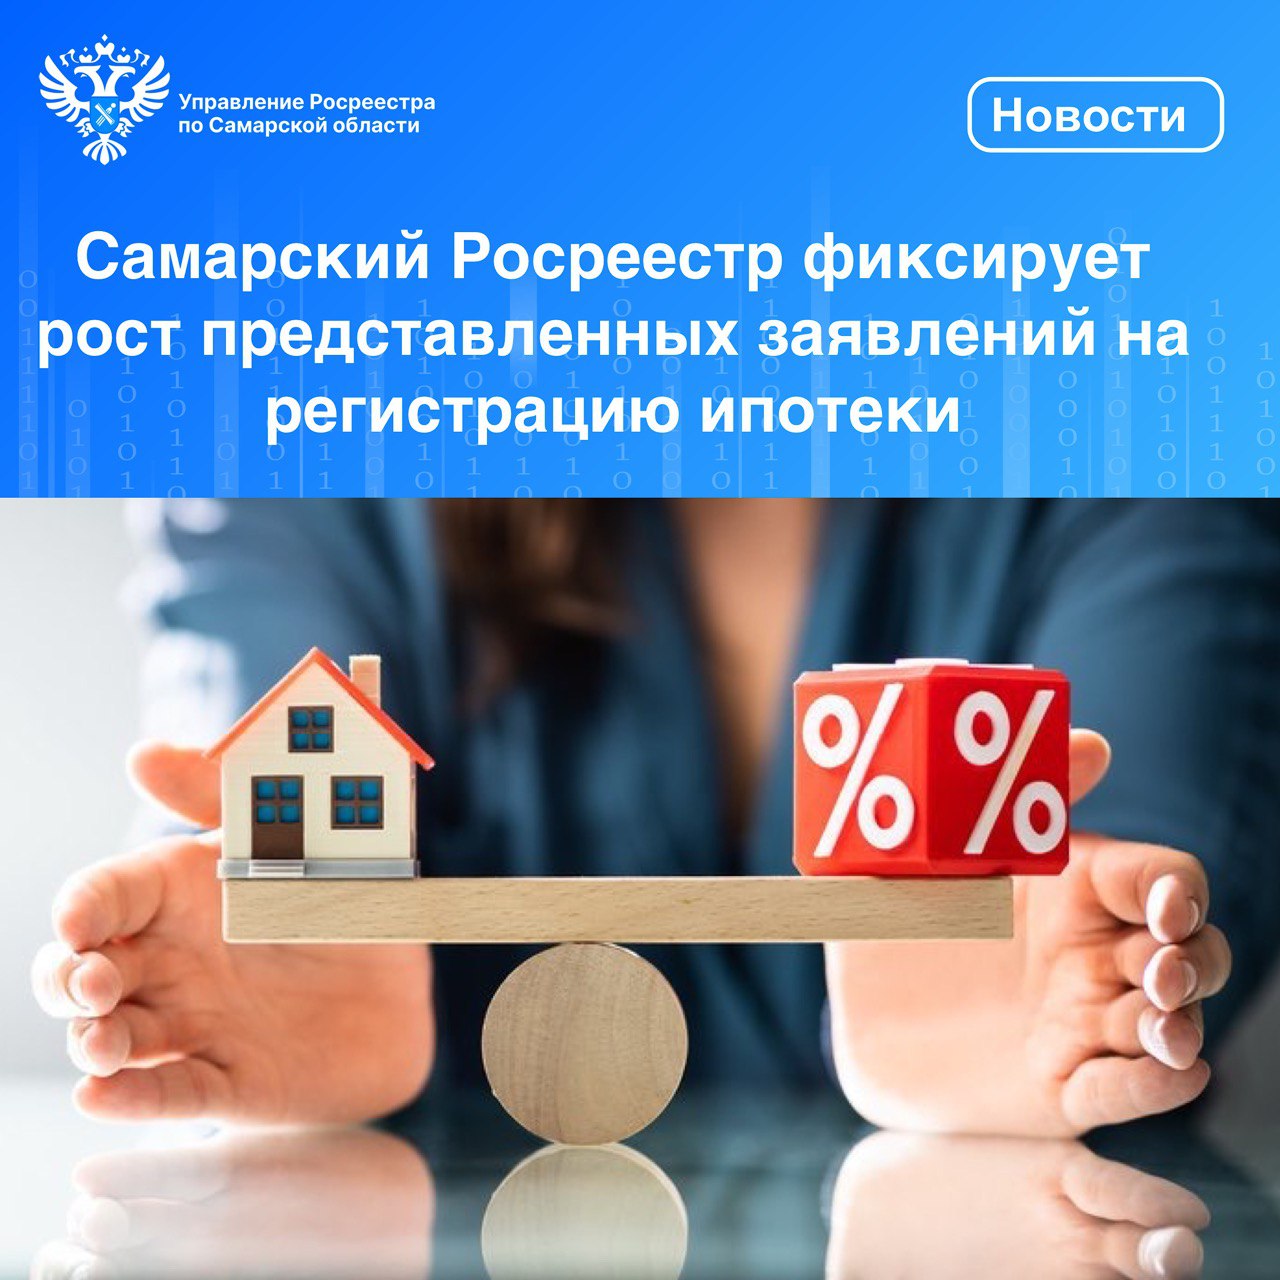 Самарский Росреестр фиксирует рост представленных заявлений  на регистрацию ипотеки